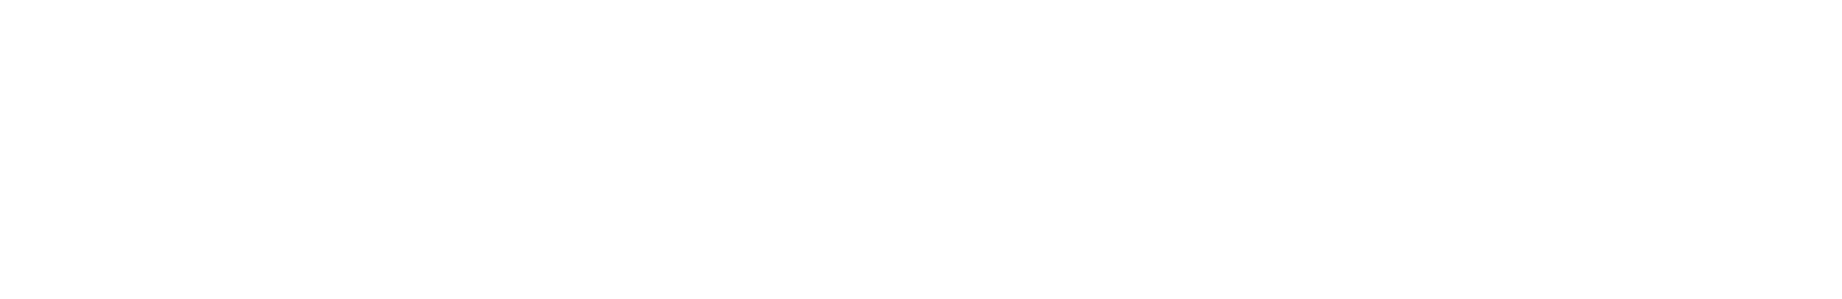 Logo M361